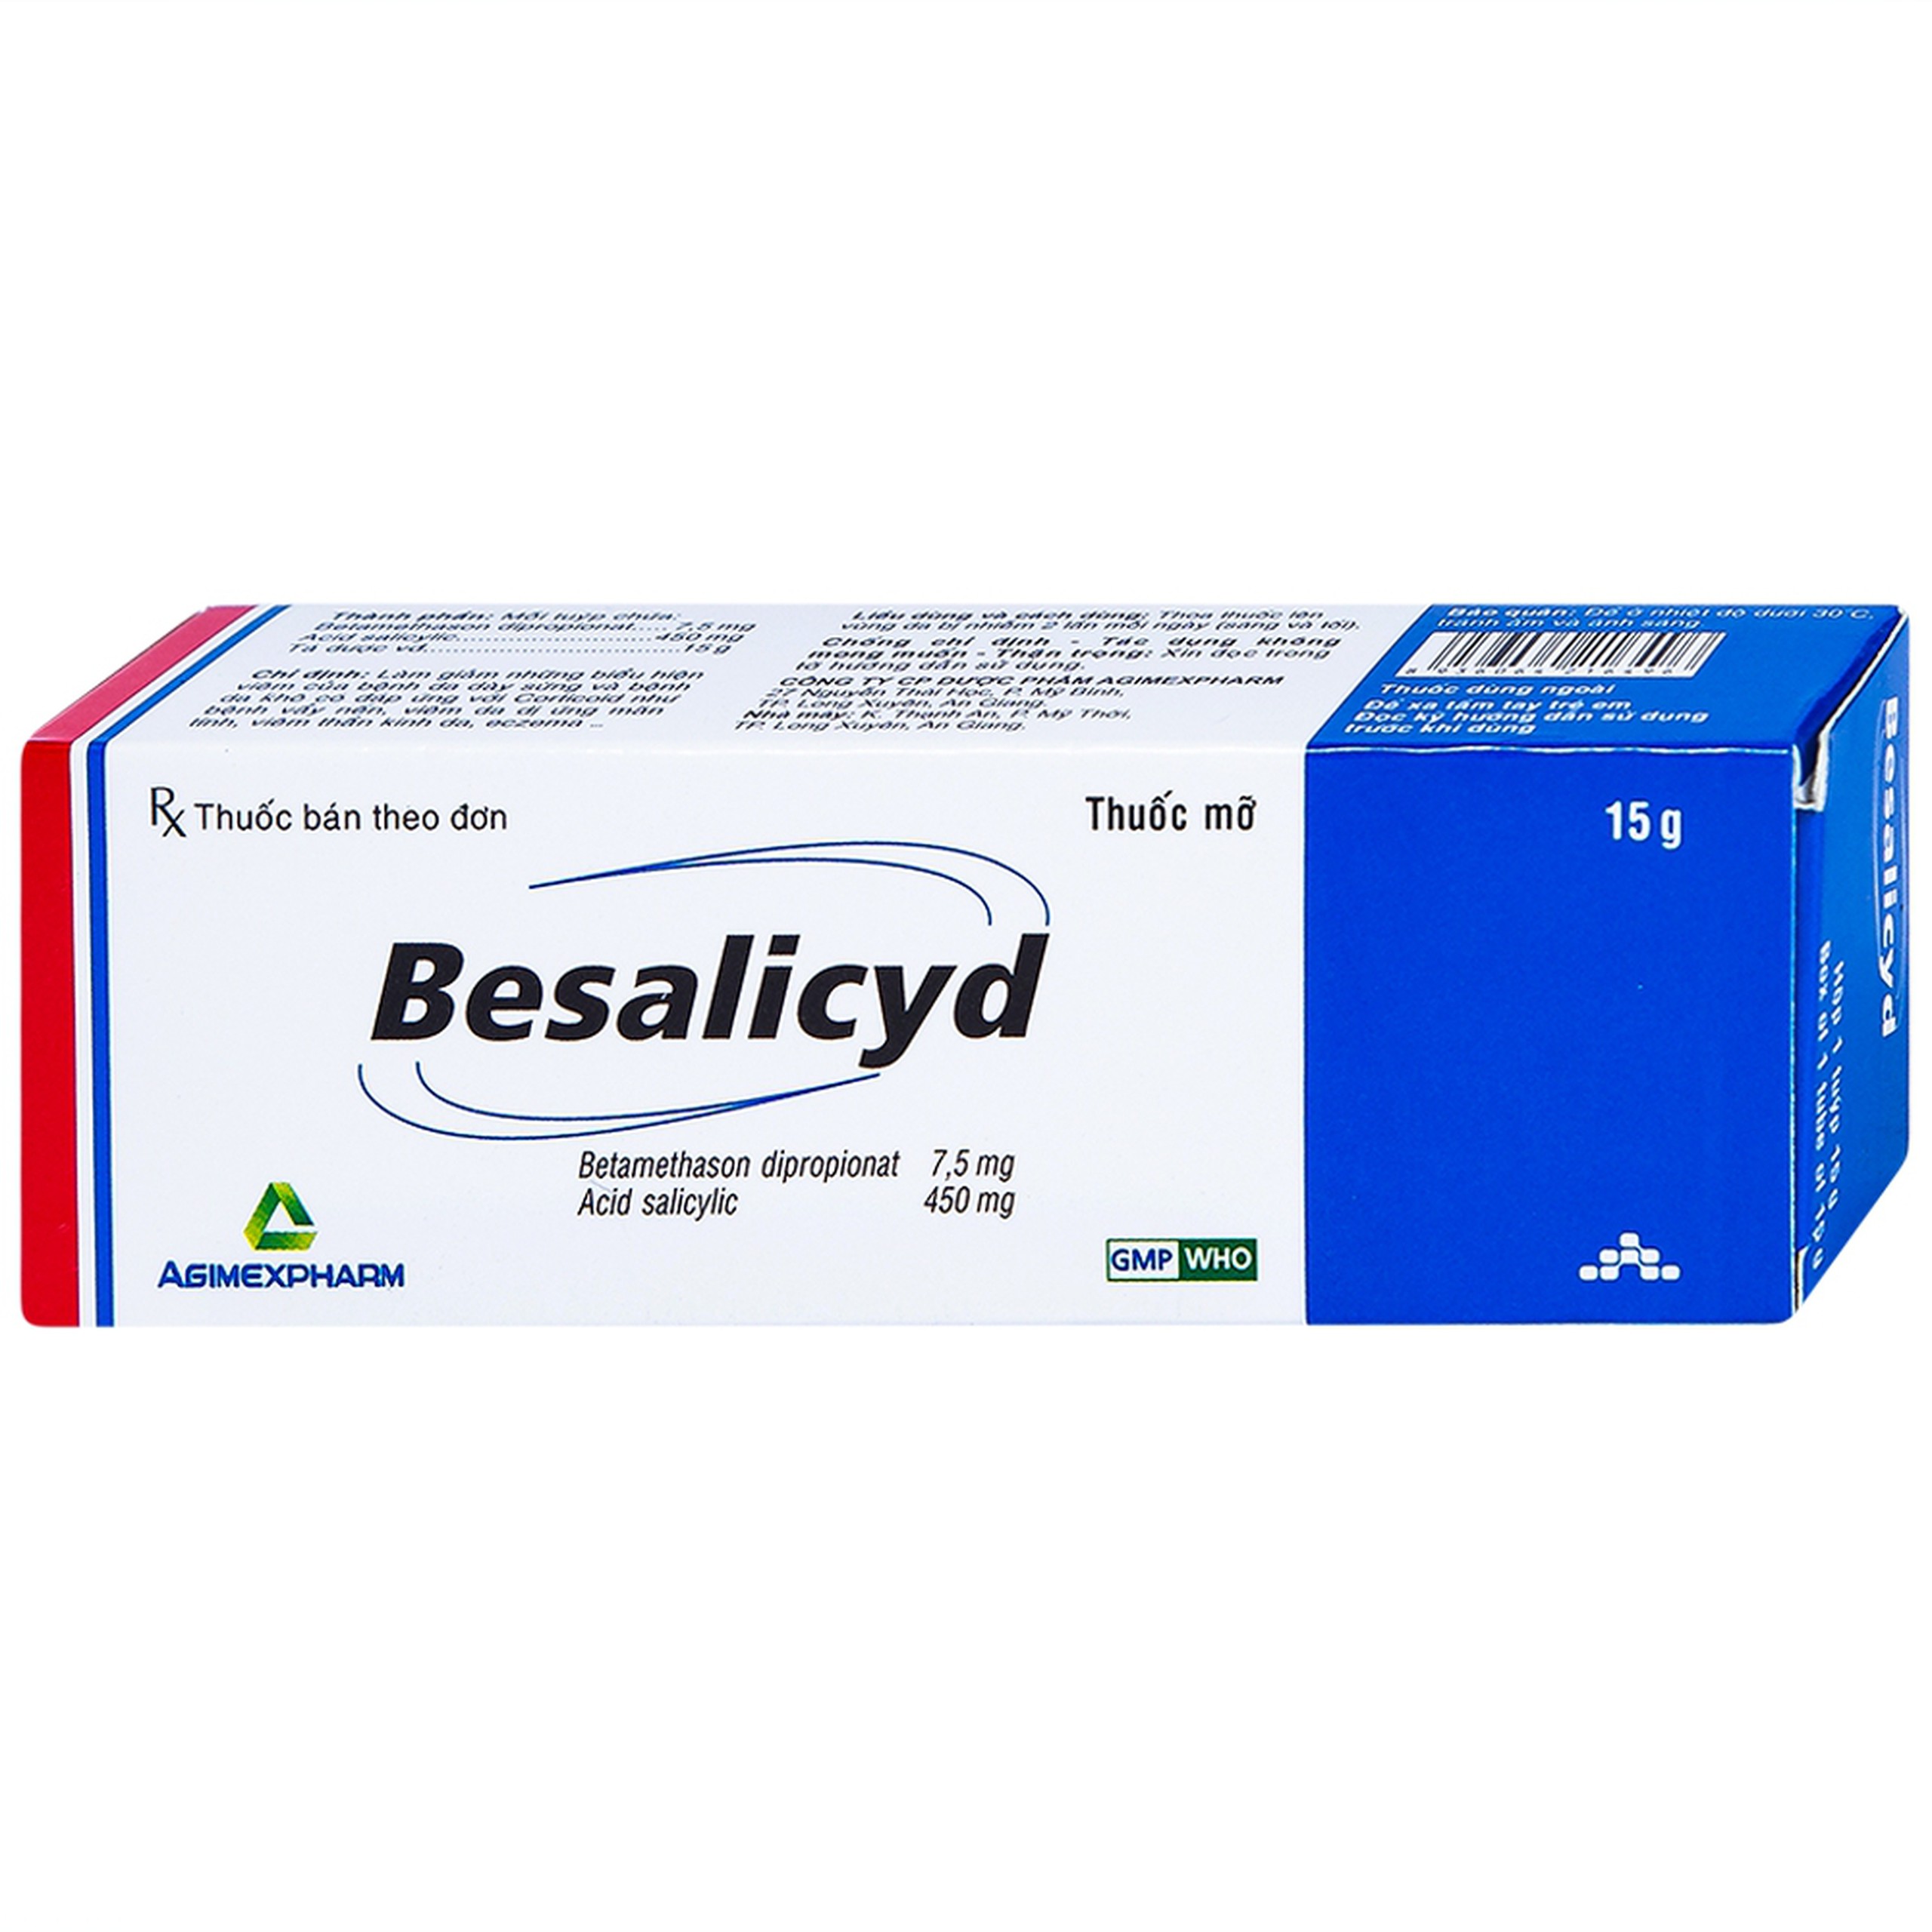 Thuốc mỡ Besalicyd Agimexpharm điều trị vẩy nến, viêm da dị ứng mãn tính (15g)